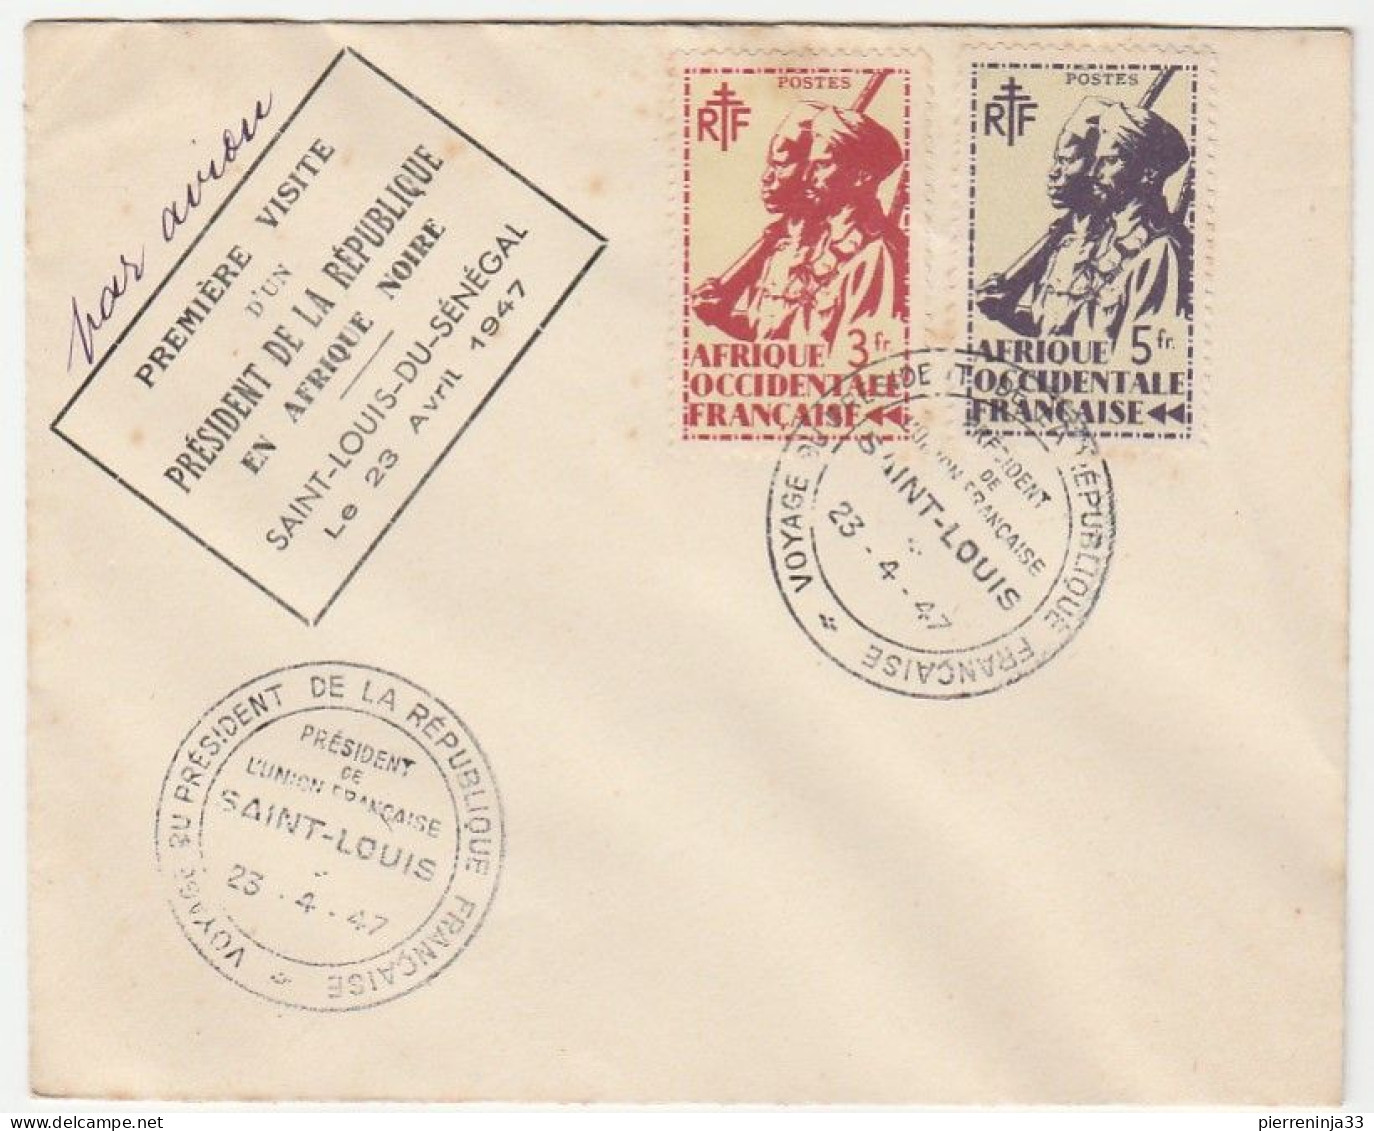 Lettre 1ère Visite D'un Président De La République En Afrique Noire, St Louis Du Sénégal, 1947 - Covers & Documents